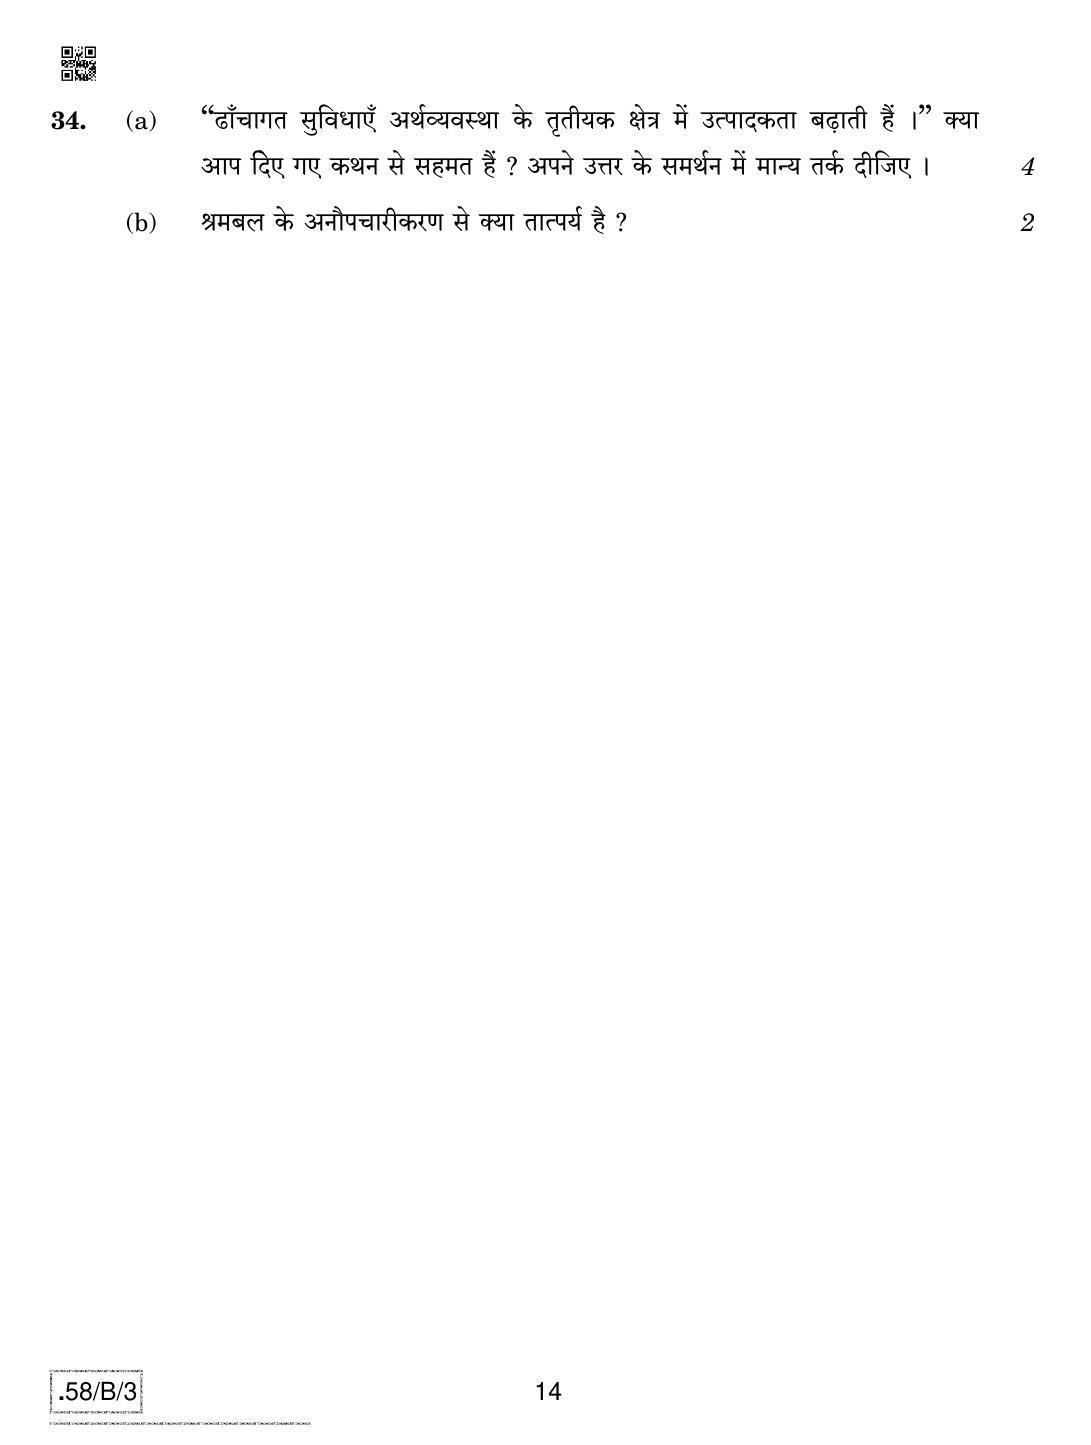 CBSE Class 12 58-C-3 - Economics 2020 Compartment Question Paper - Page 14